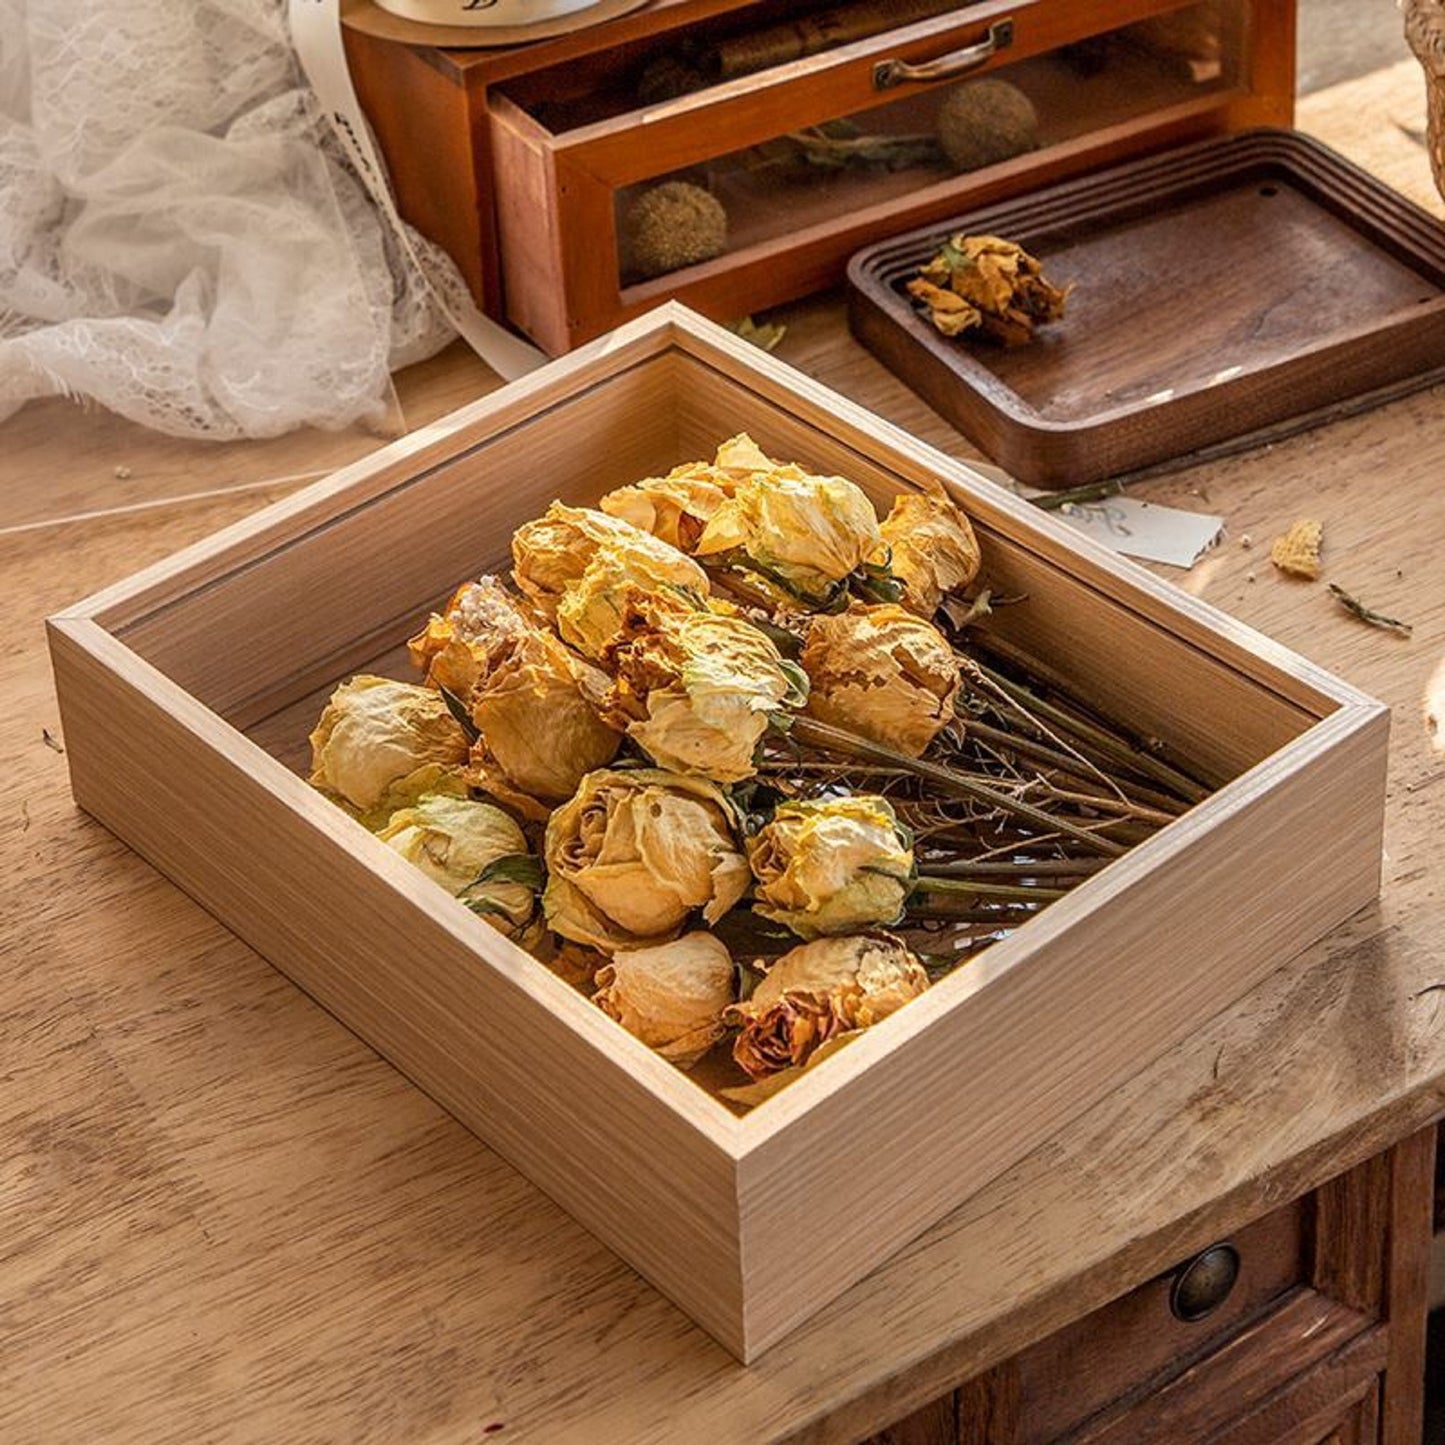 JIYUERLTD Schatzkiste zum Selbermachen aus Holz – 30,5 cm Organisieren, präsentieren und präsentieren Sie Ihre Sammlerstücke, Blöcke, getrockneten Blumen, Tannenzapfen und Muscheln mit Stil!